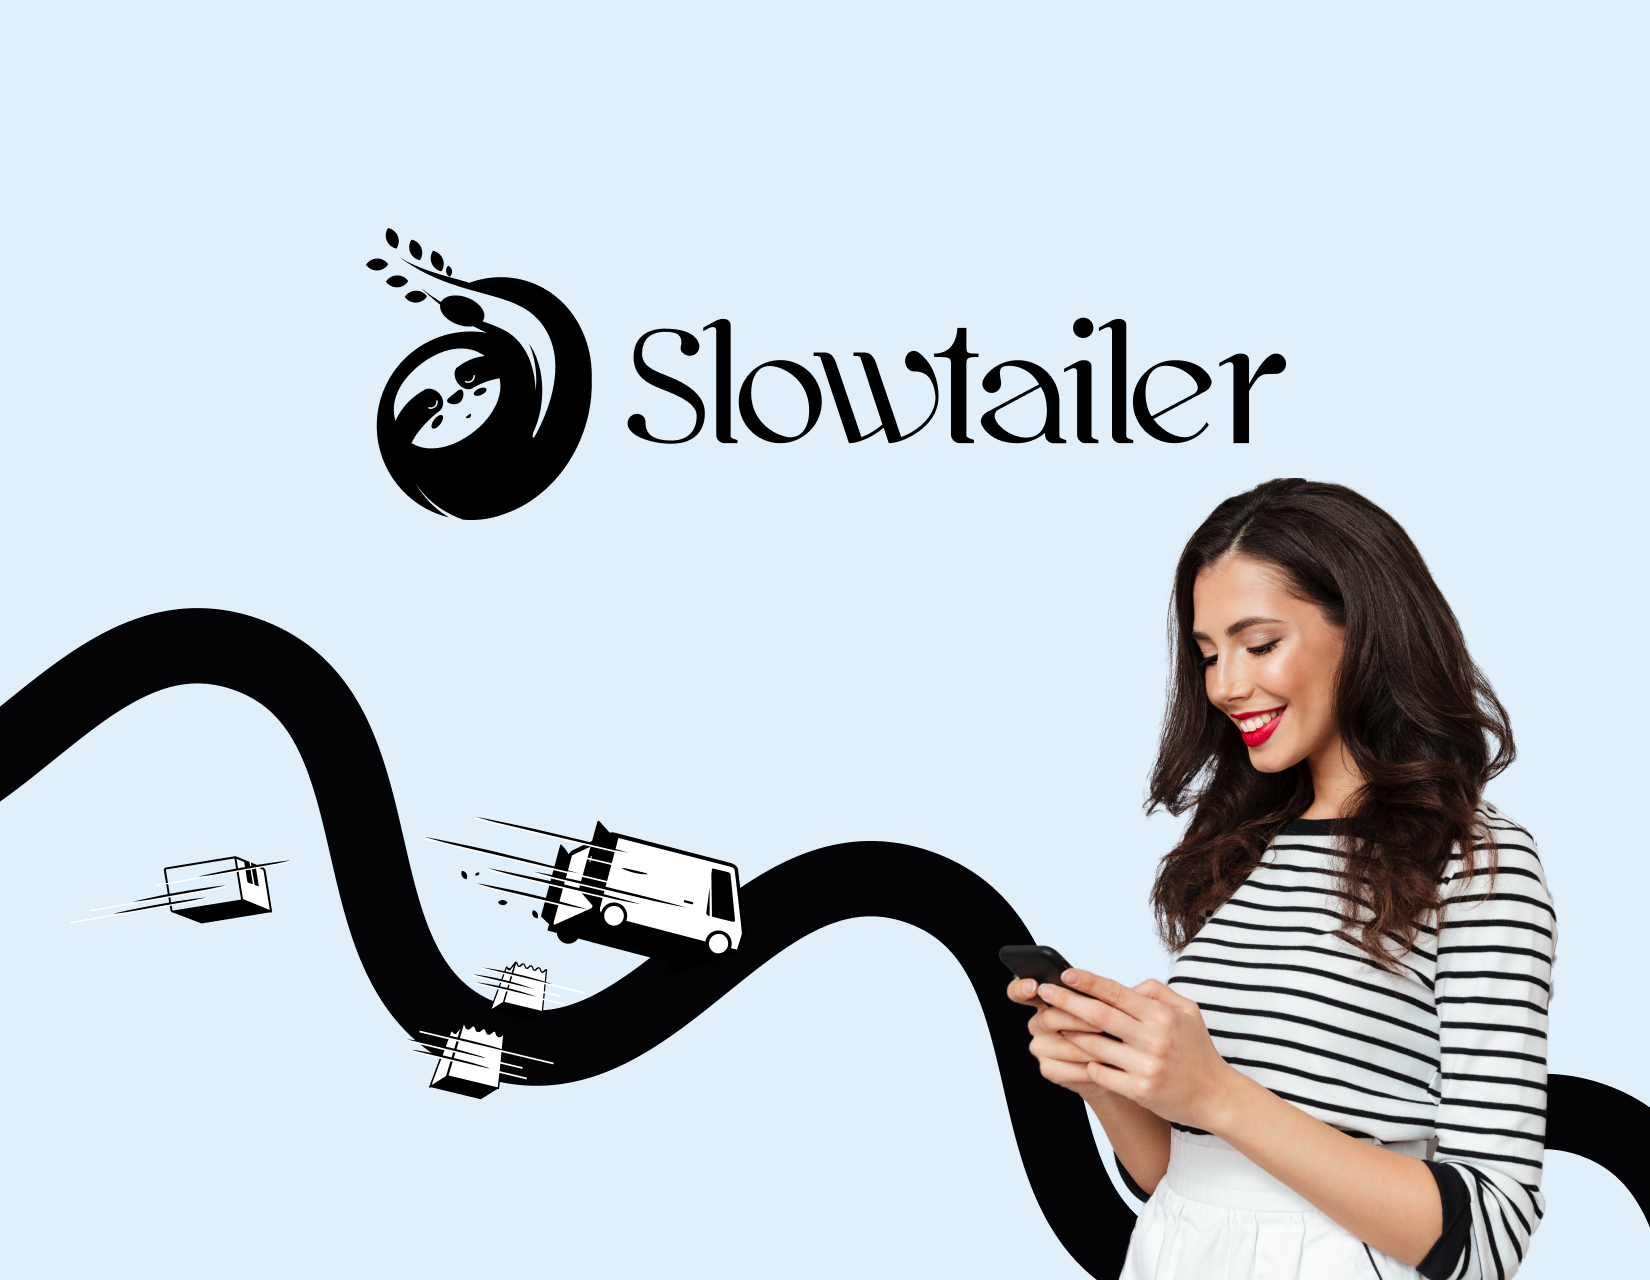 Slowtailer